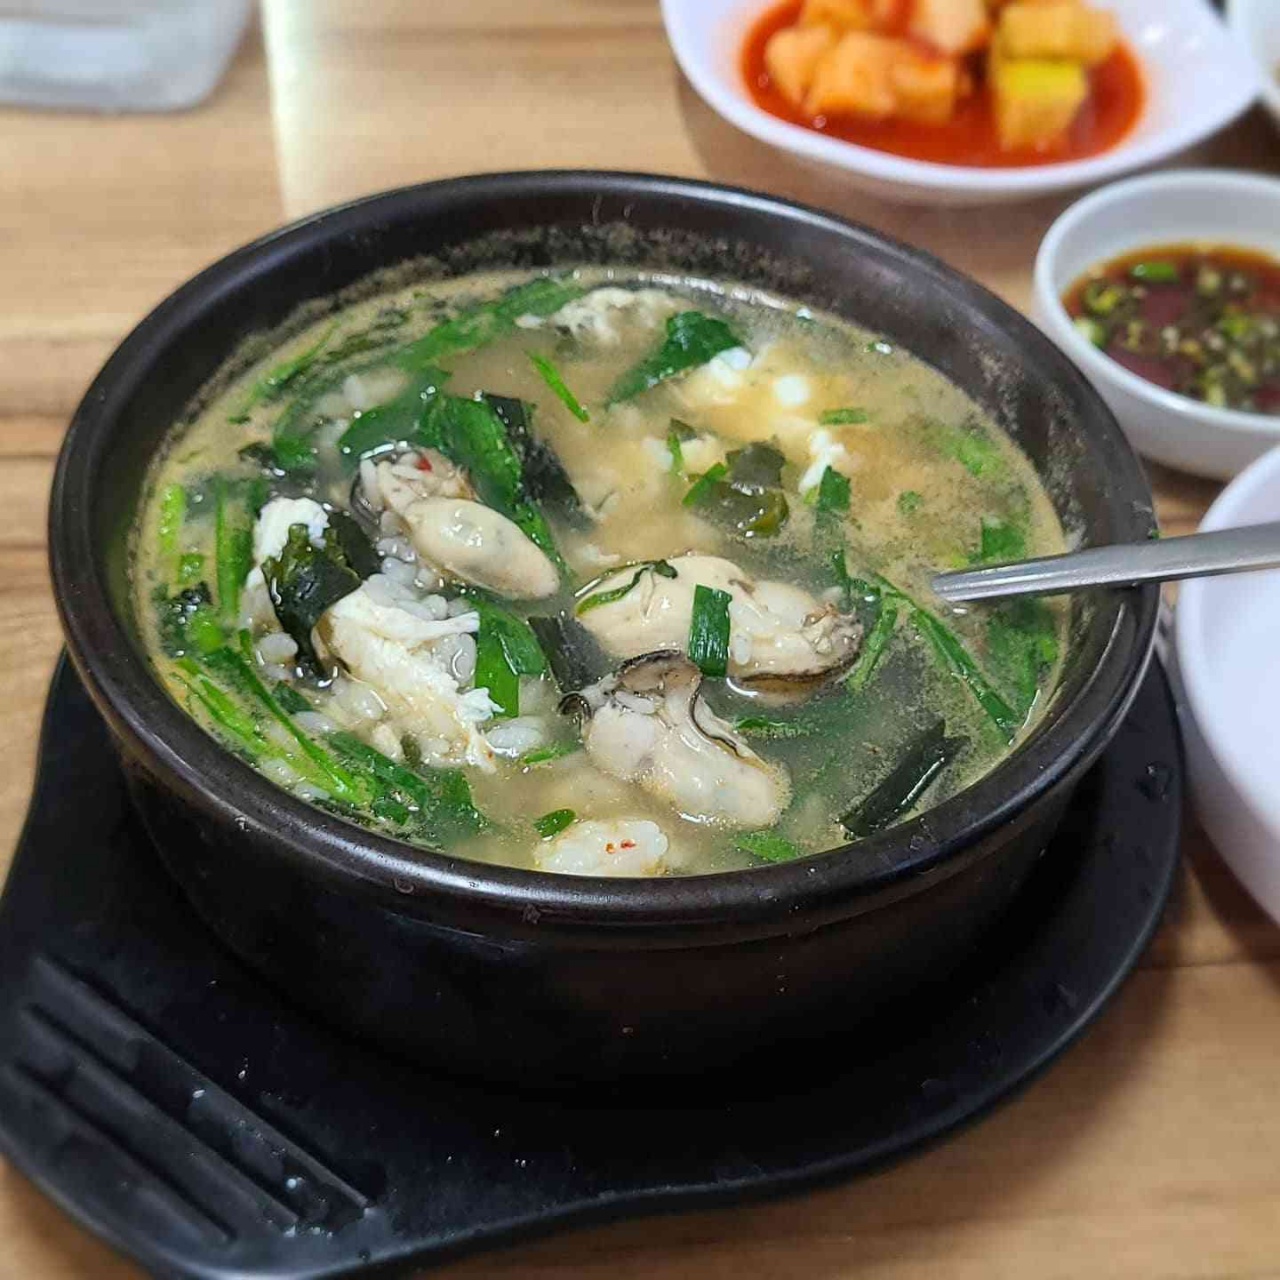 코끝을 녹이는 향긋한 바다의 진미, 서울 굴국밥 맛집 5곳